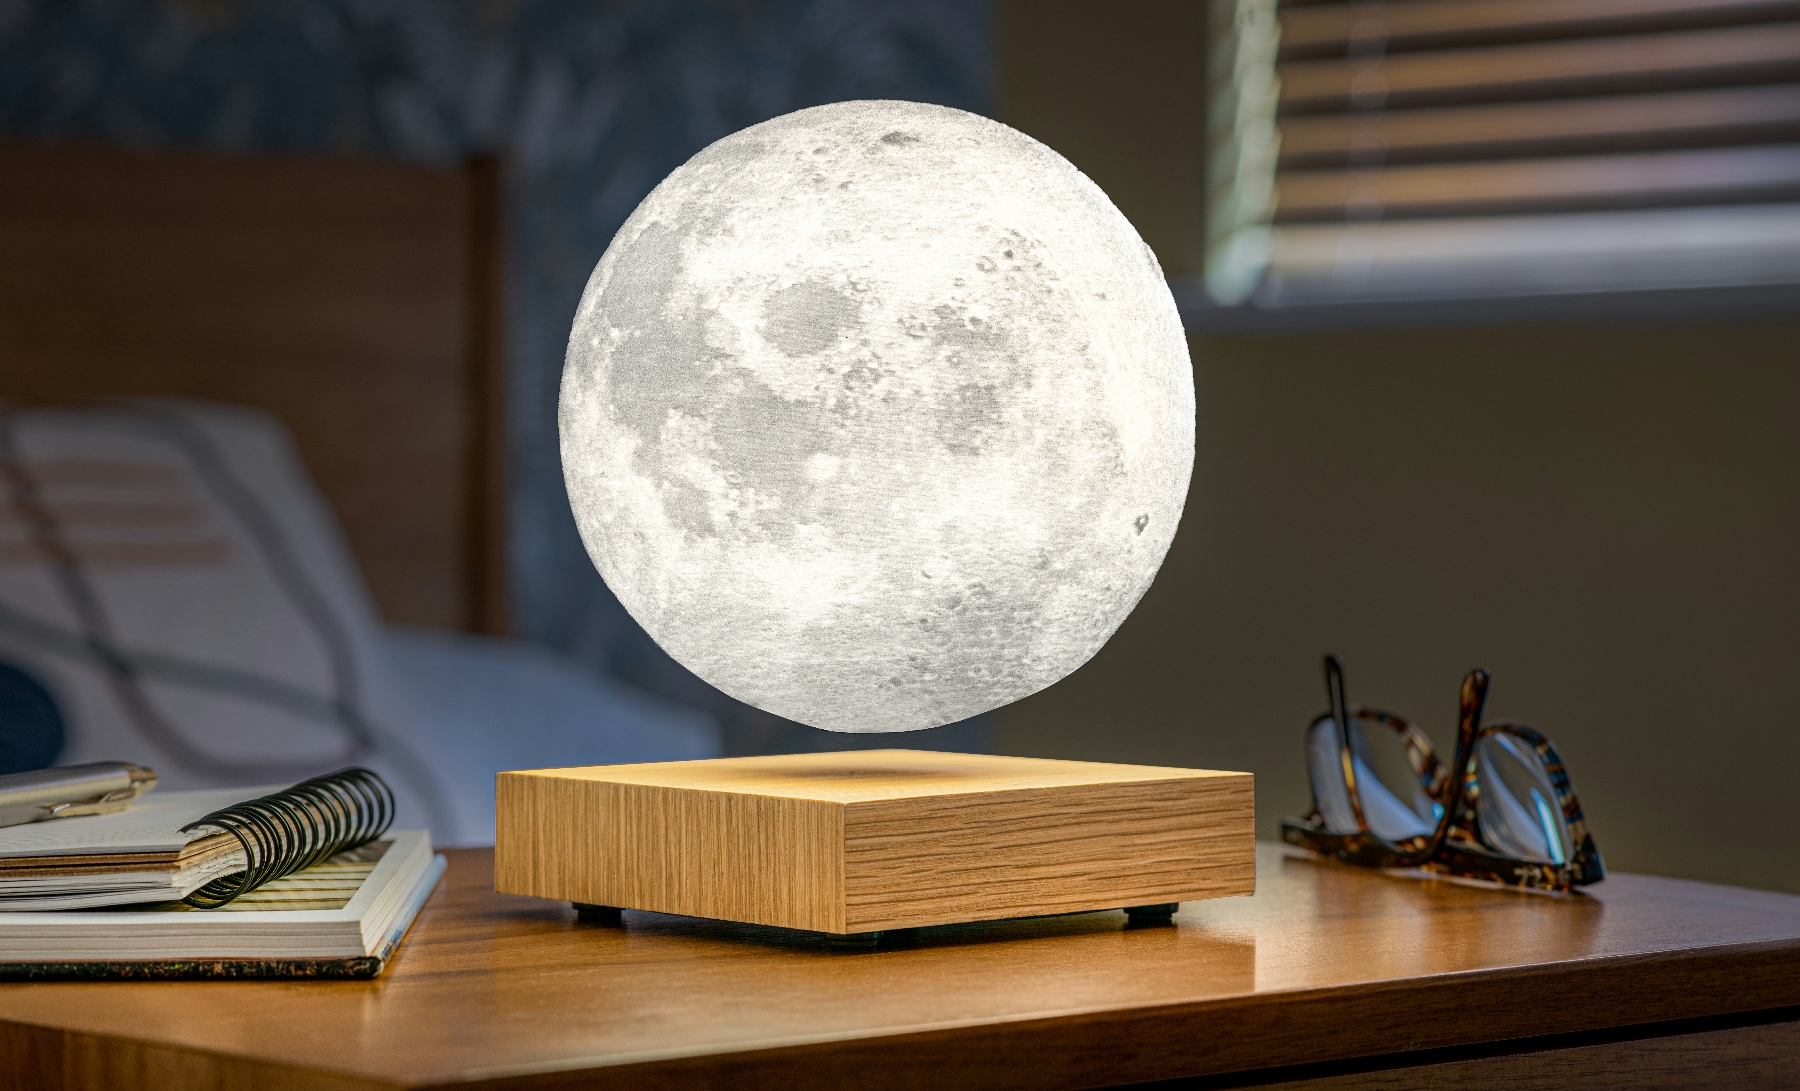 gingko-design-smart-moon-lamp03.jpg